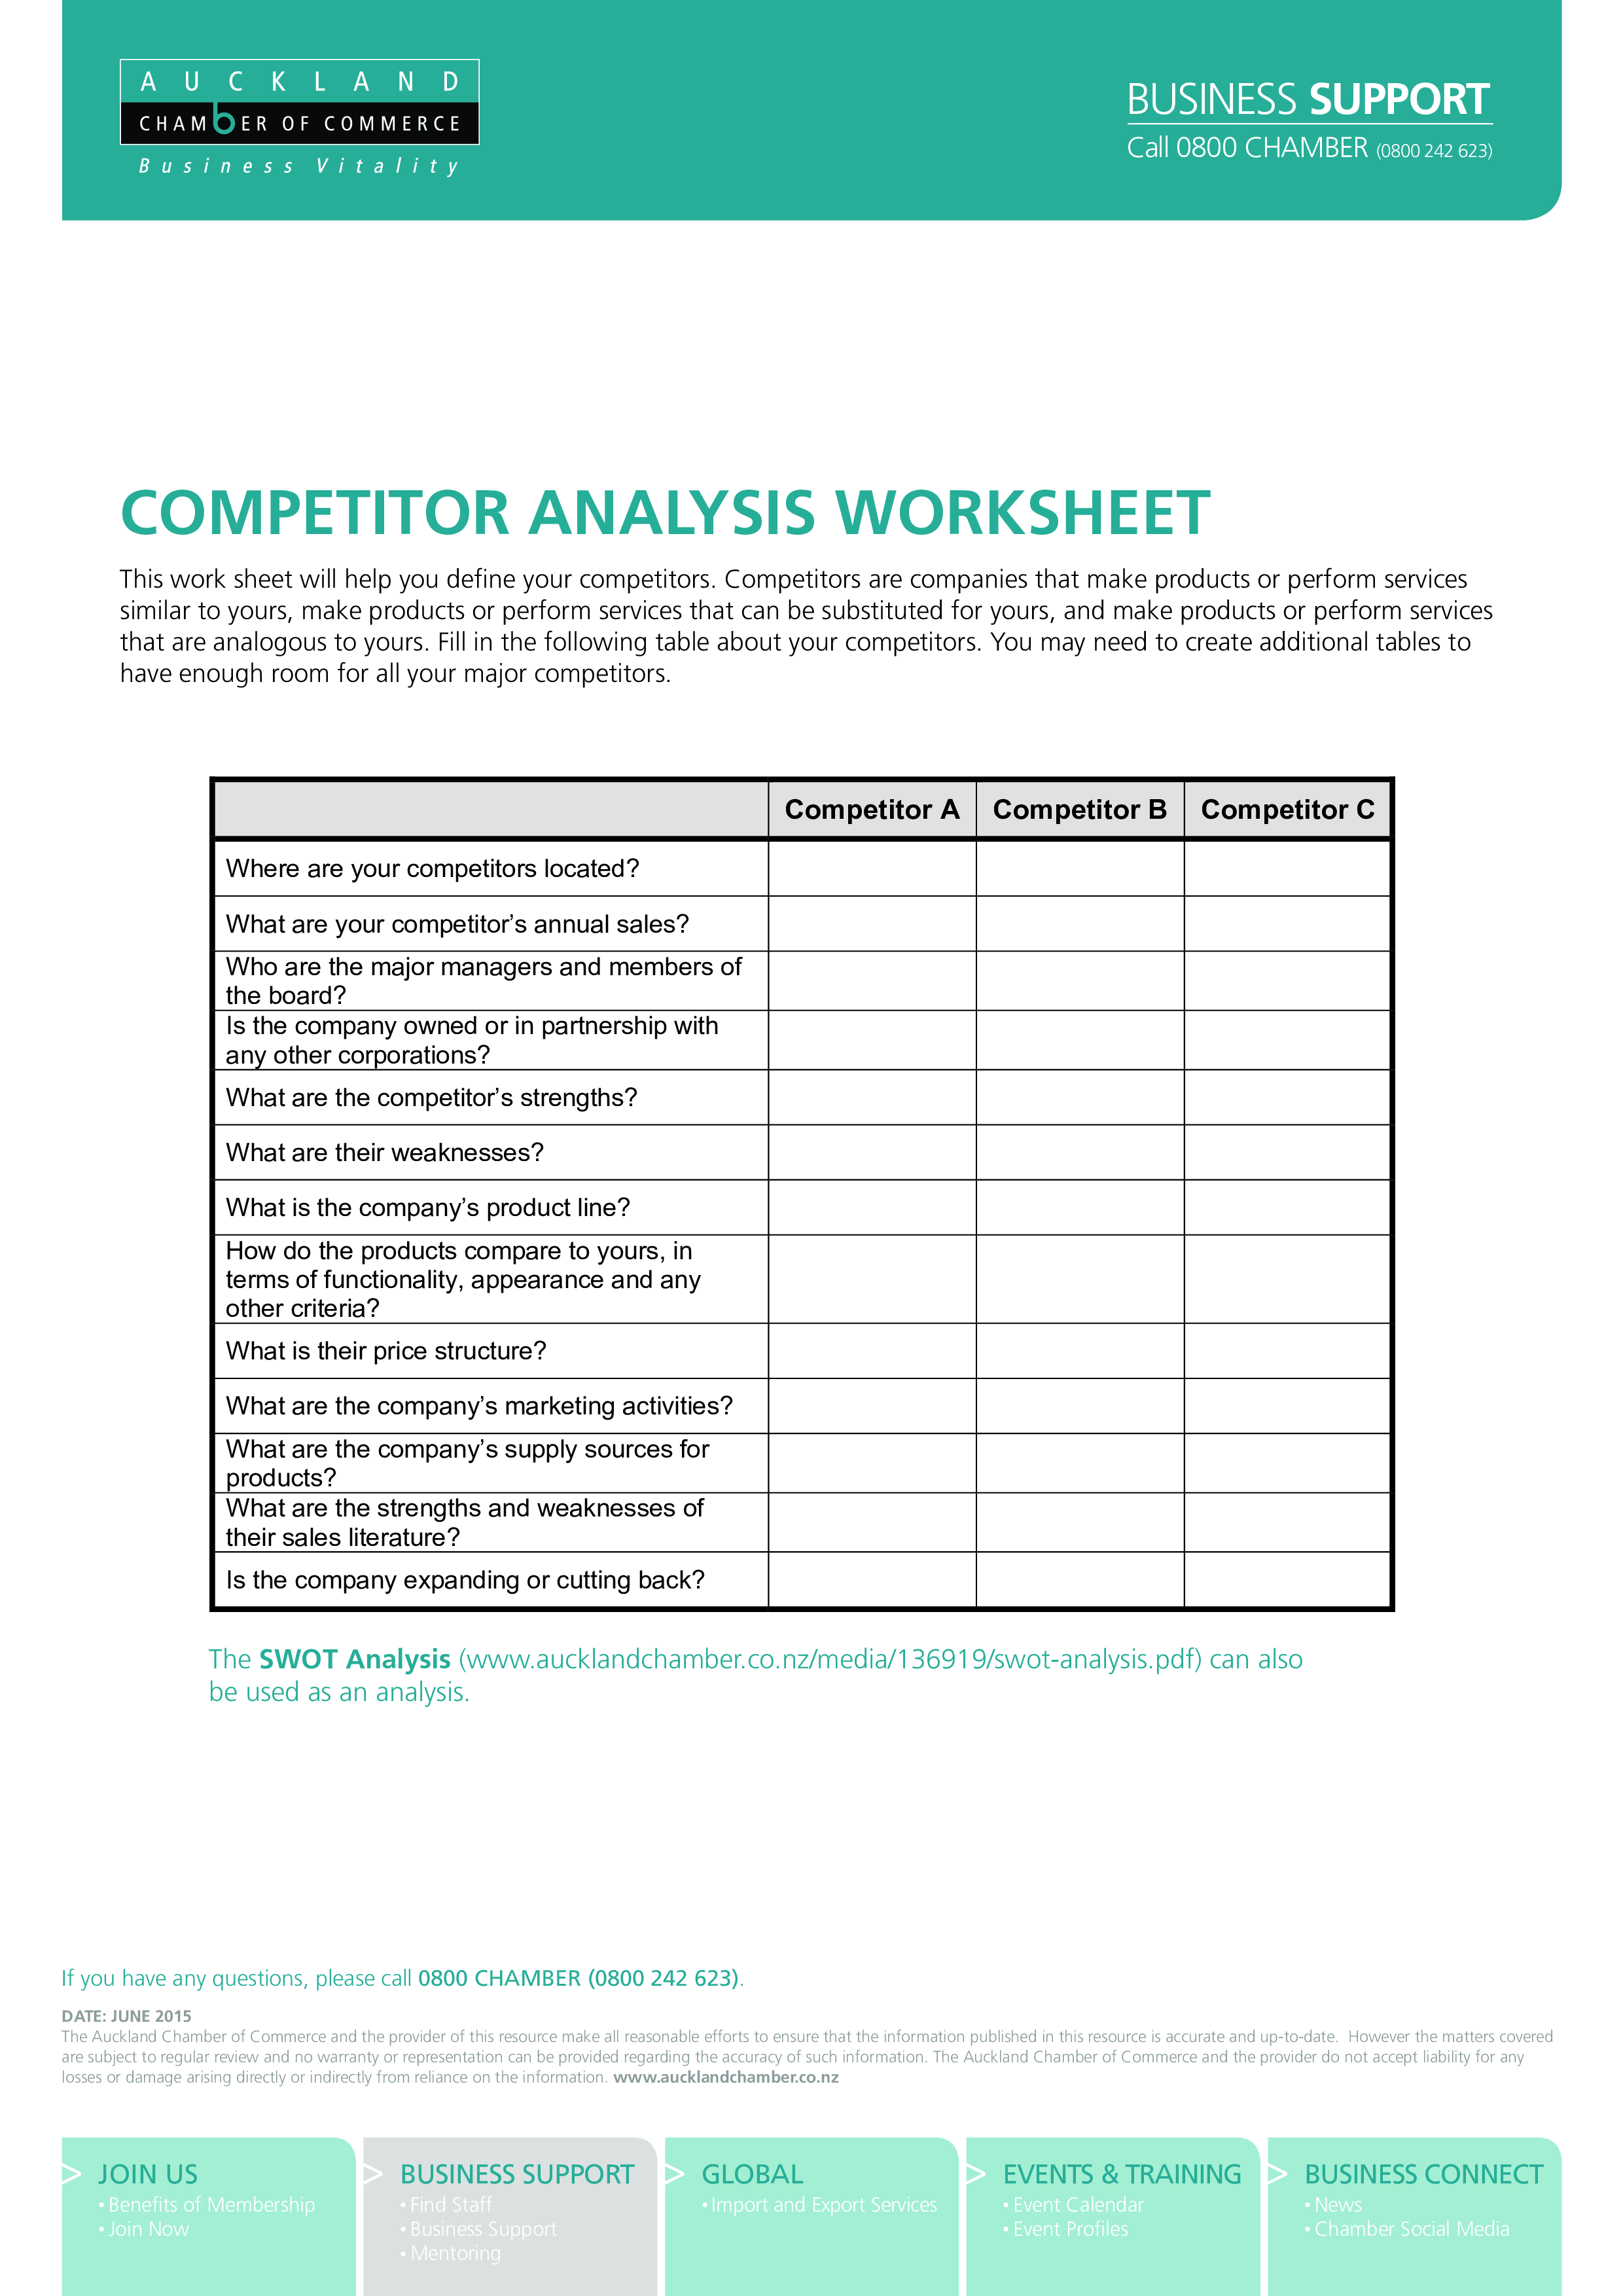 Competitor Analysis Worksheet main image